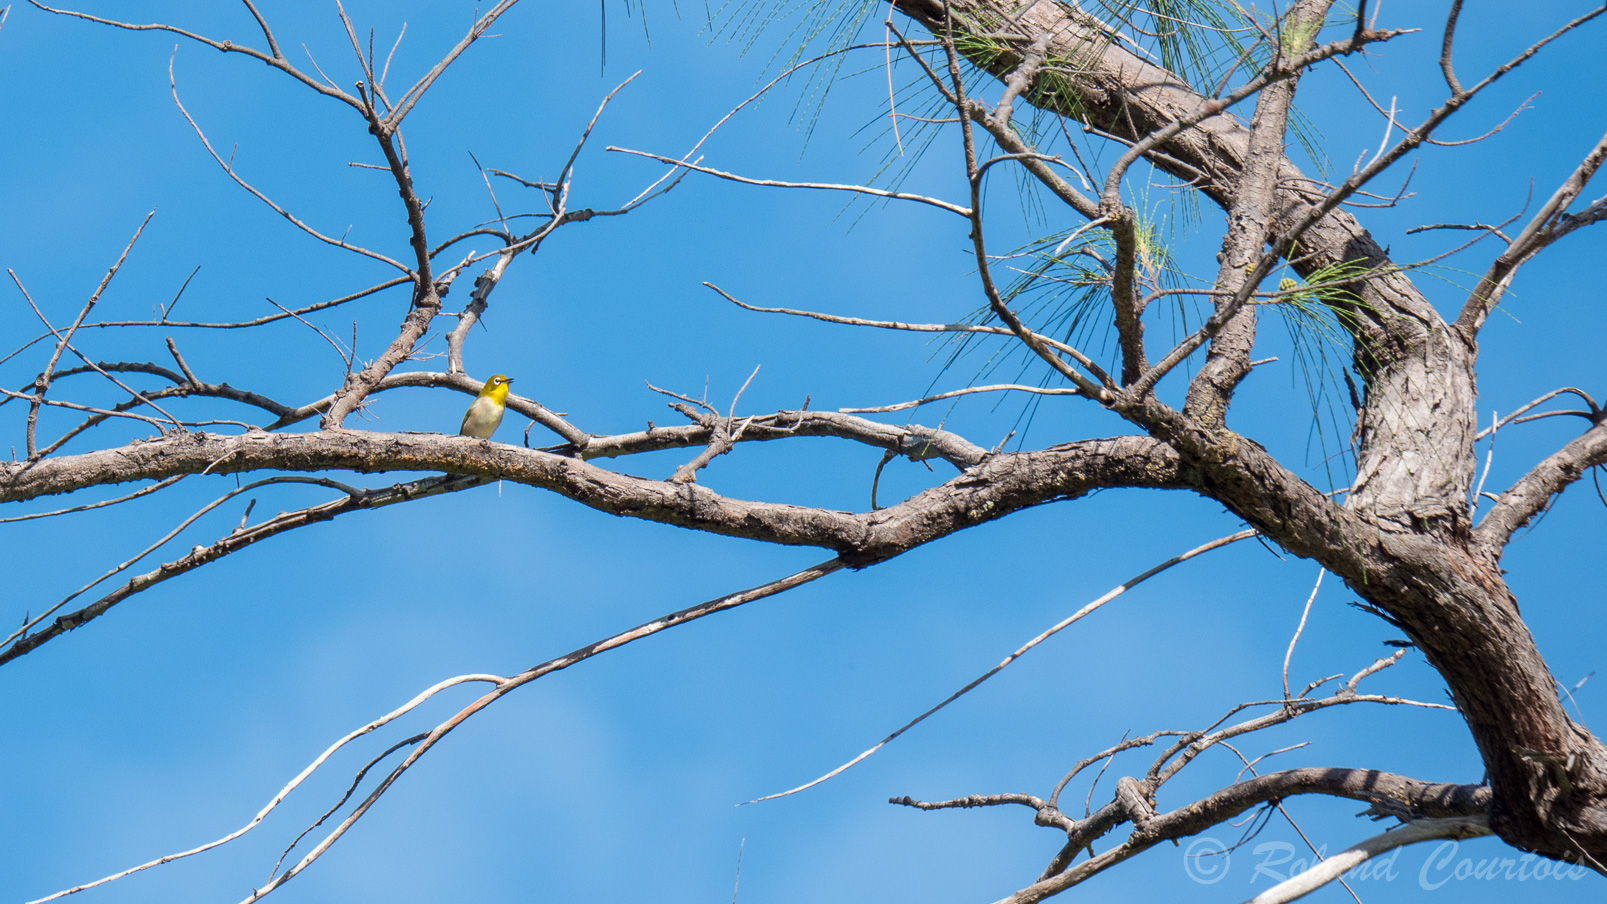 Un zostérops malgache perché sur un arbre..